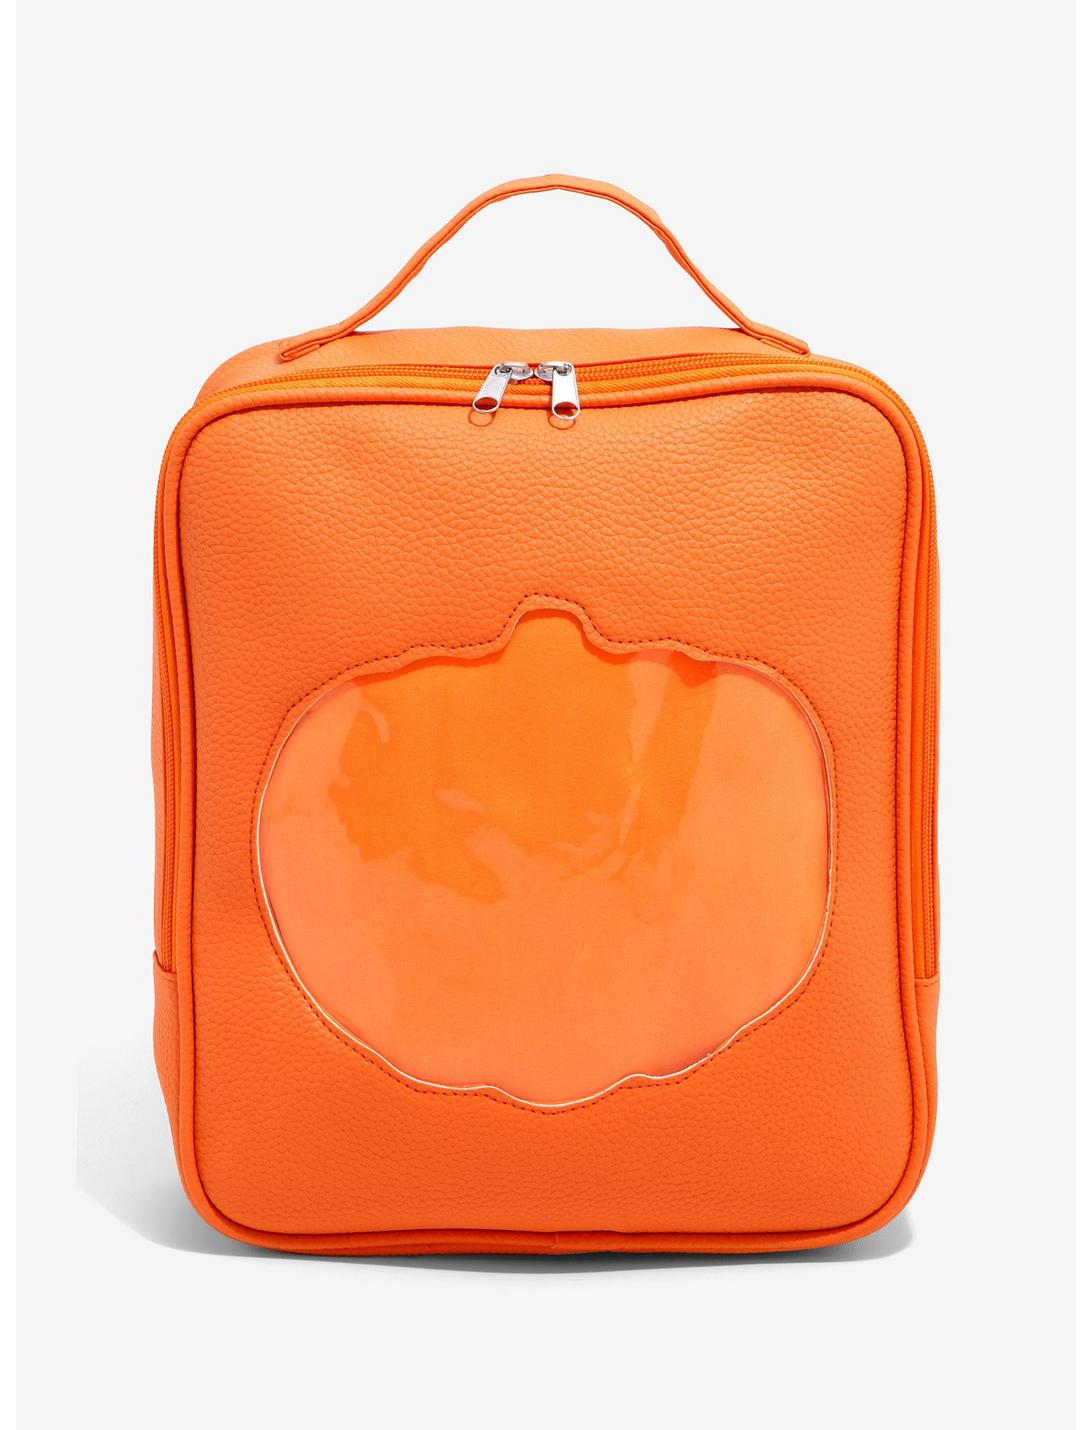 Pumpkin Cutout Pin Collector Mini Backpack, , hi-res